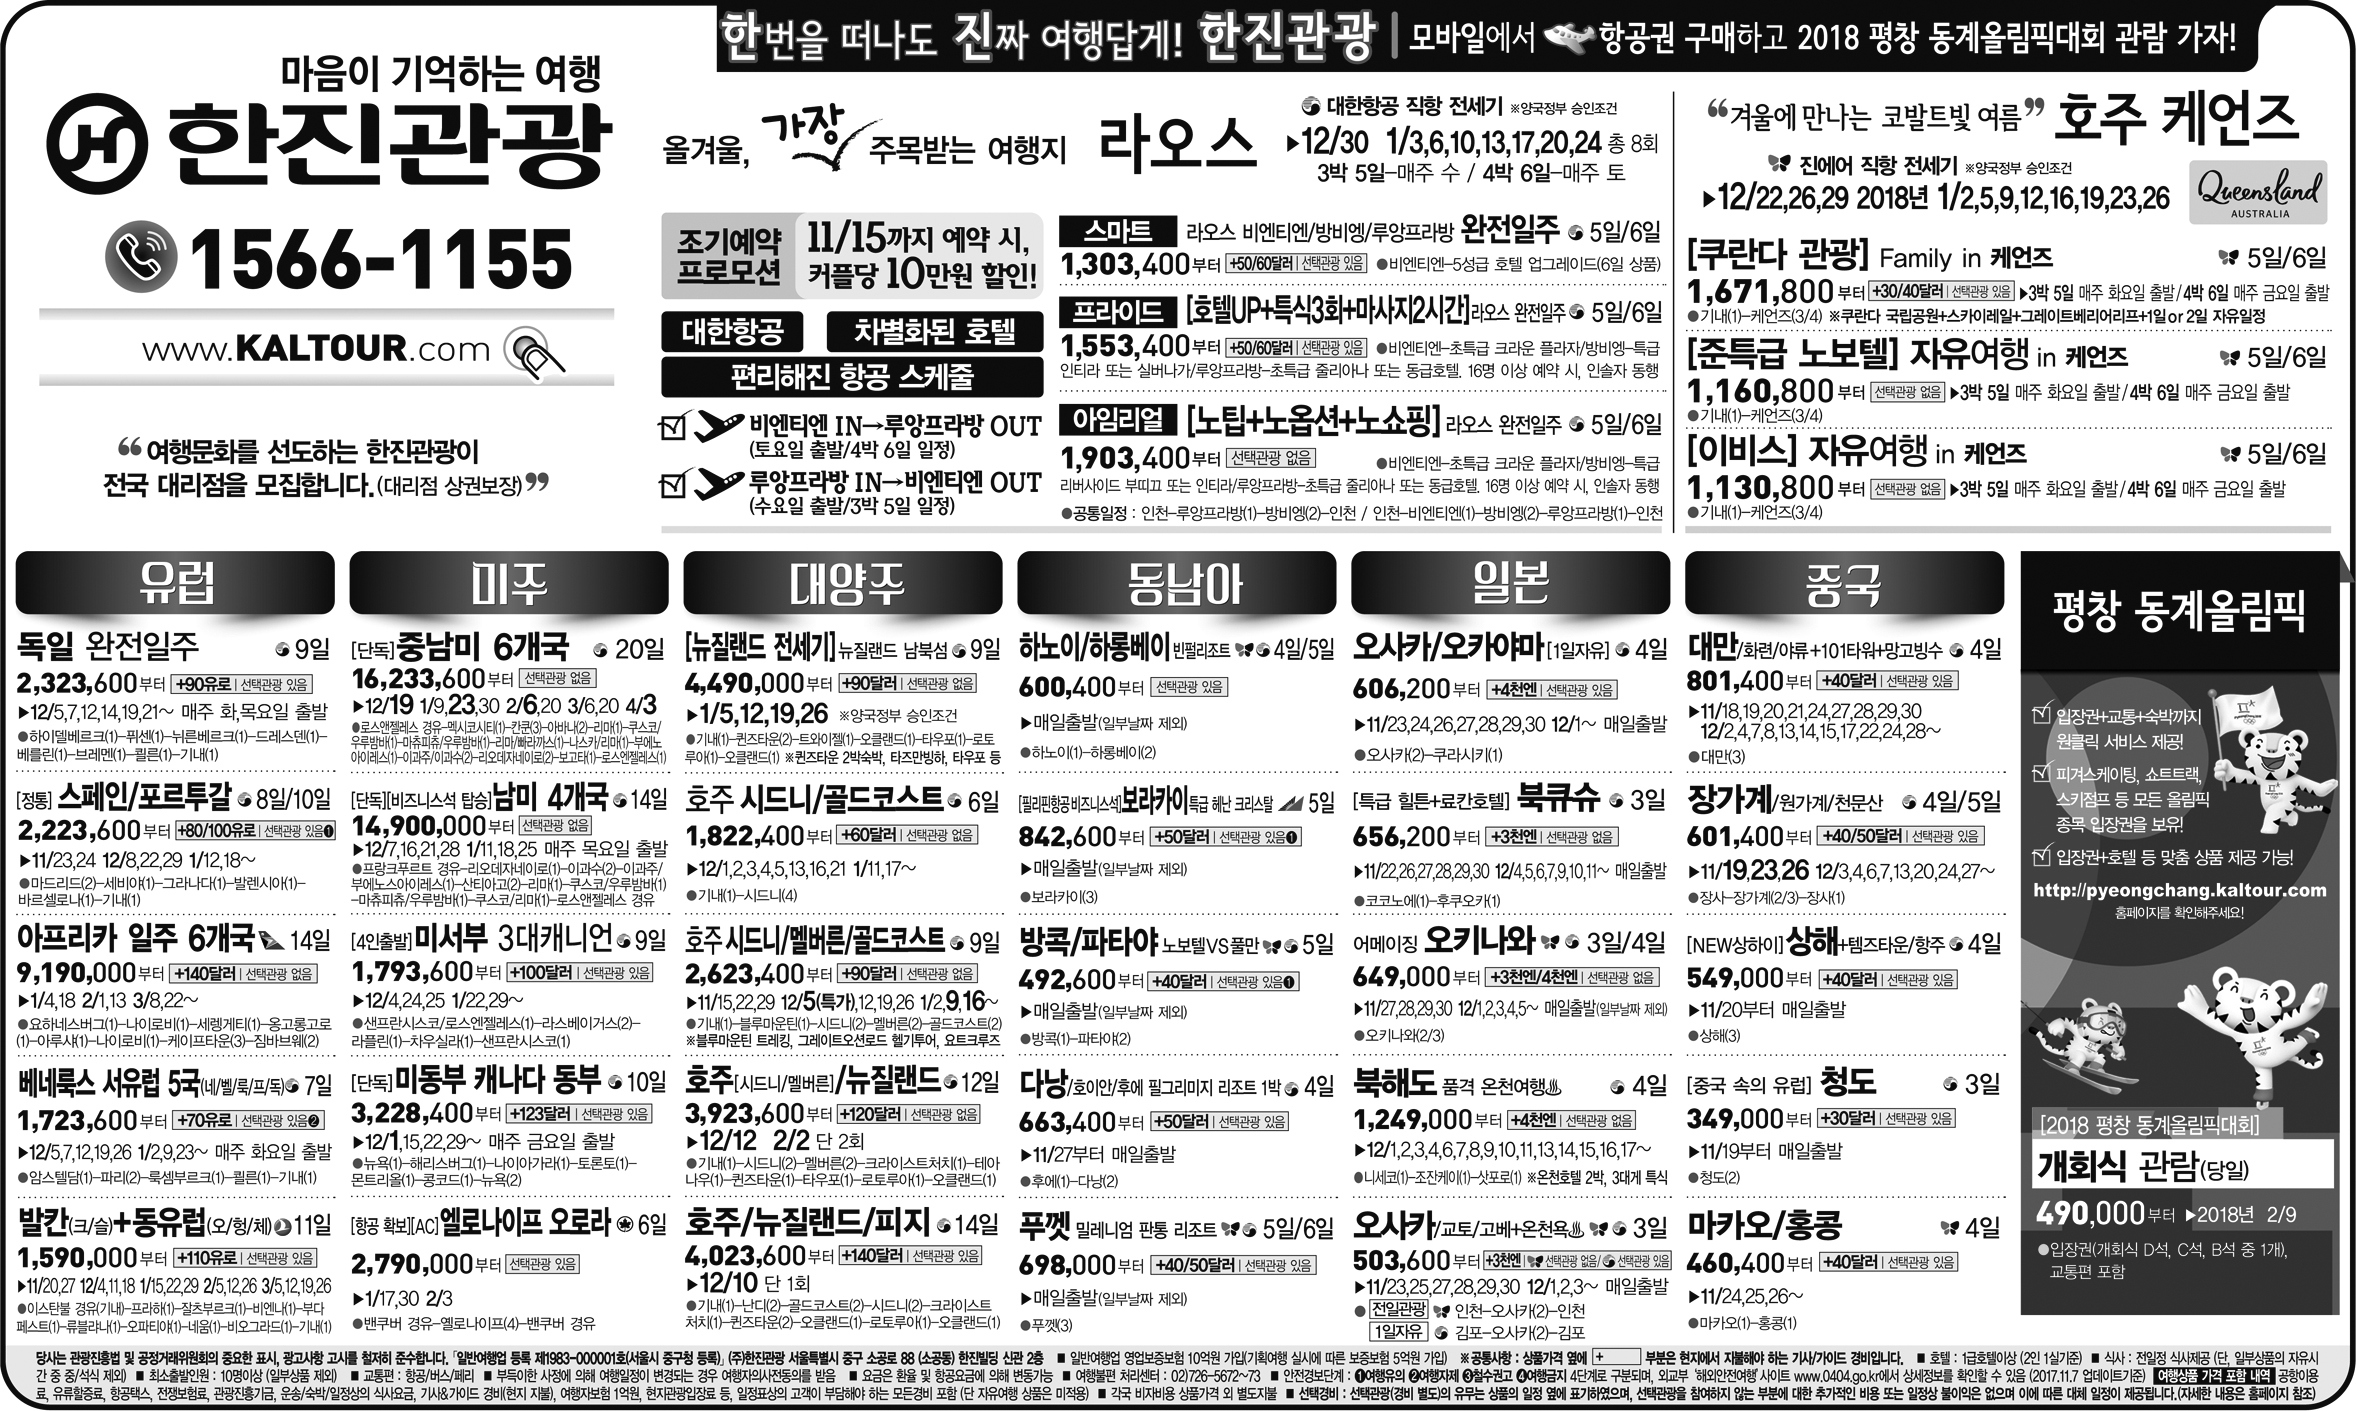 중앙일보 [2017.11.08 수요일]